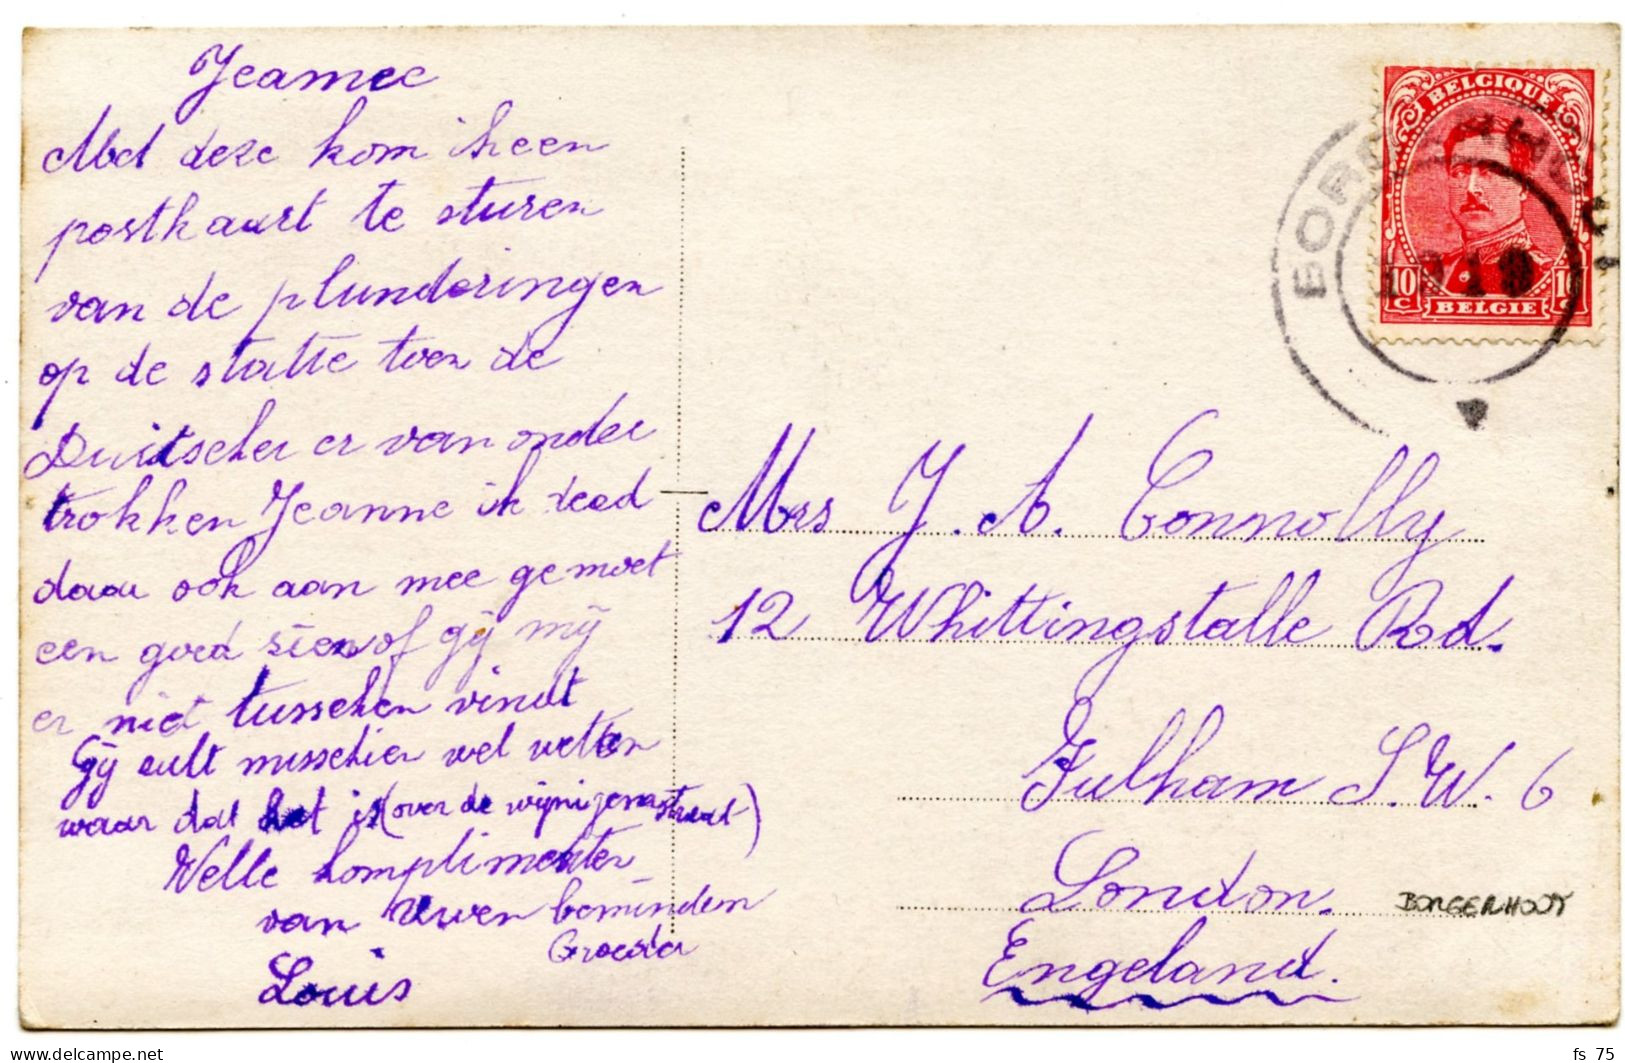 BELGIQUE - COB 138 CACHET CAOUTCHOUC BORGERHOUT SUR CARTE POSTALE, 1919 - Covers & Documents